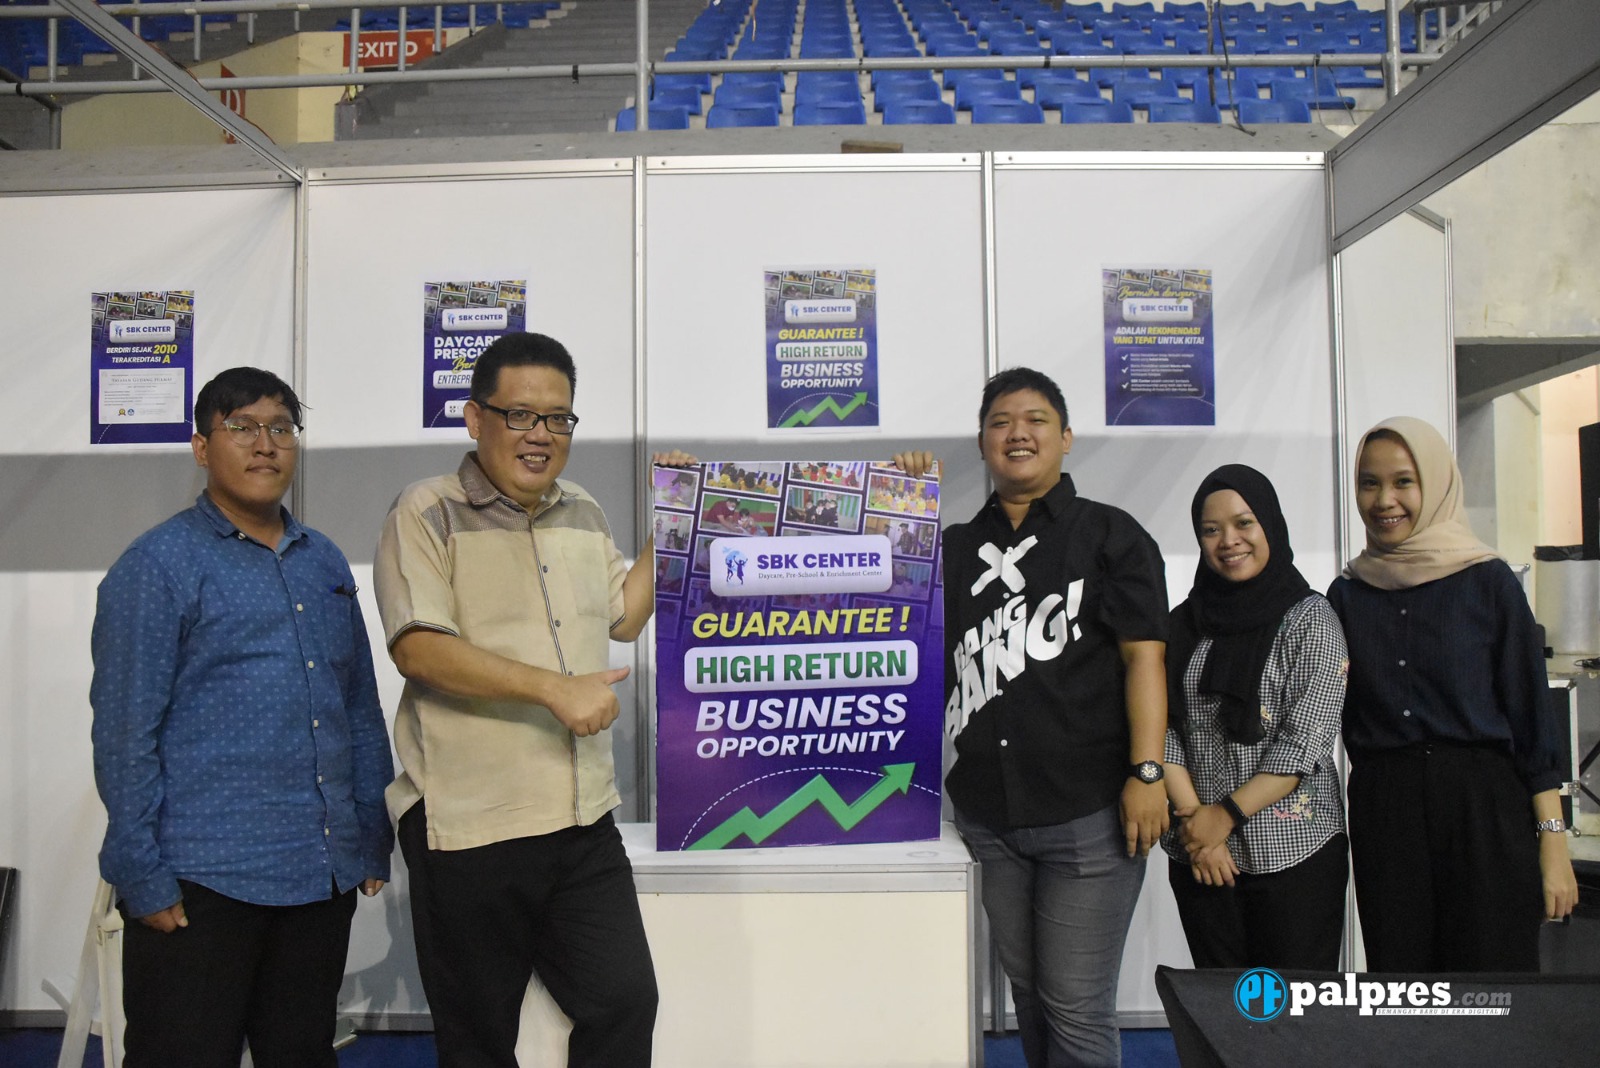 SBK Center, Brand Lokal Palembang Buka Bisnis Franchise, Minat?